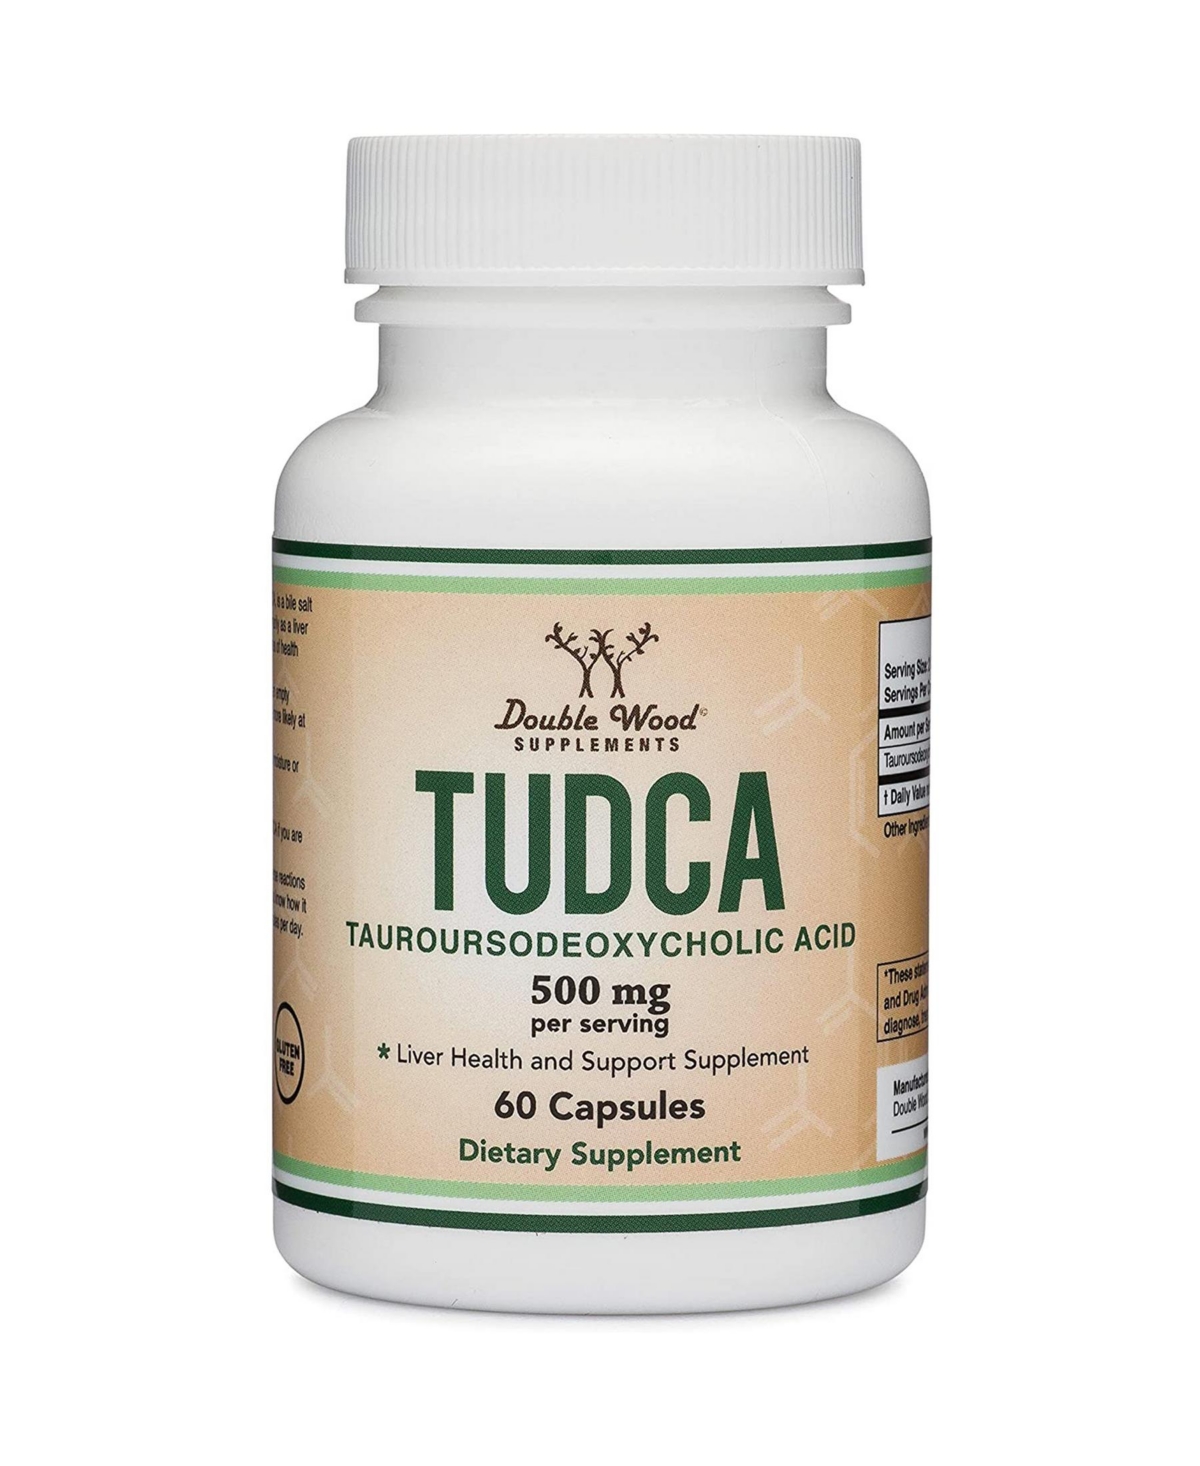 Tudca - 60 capsules, 500 mg servings